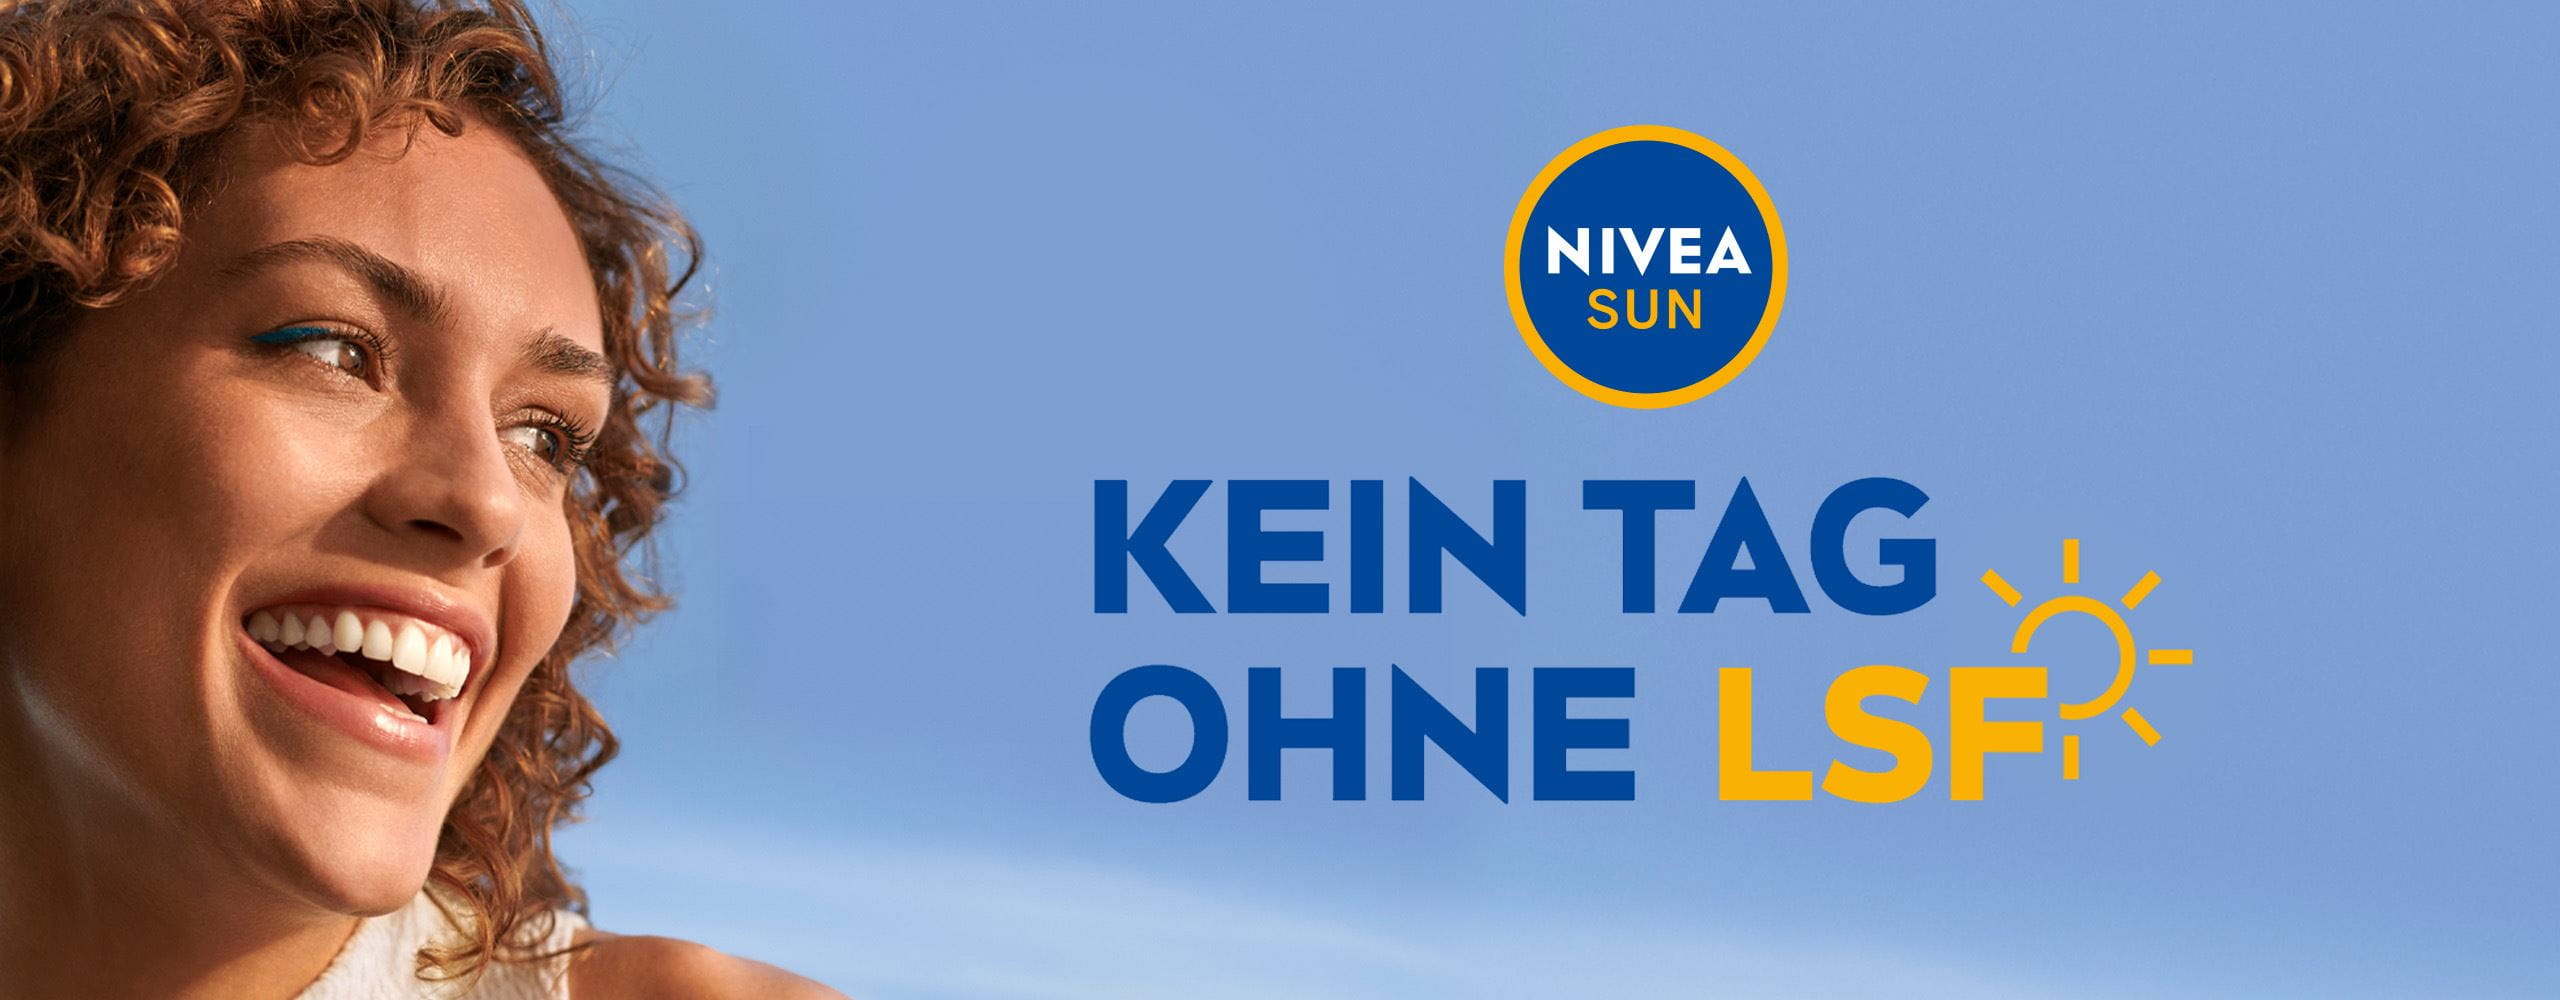 Werbebanner von NIVEA SUN mit dem Slogan ‘KEIN TAG OHNE LSF’ und einem Bild einer lachenden Frau vor einem blauen Himmelshintergrund